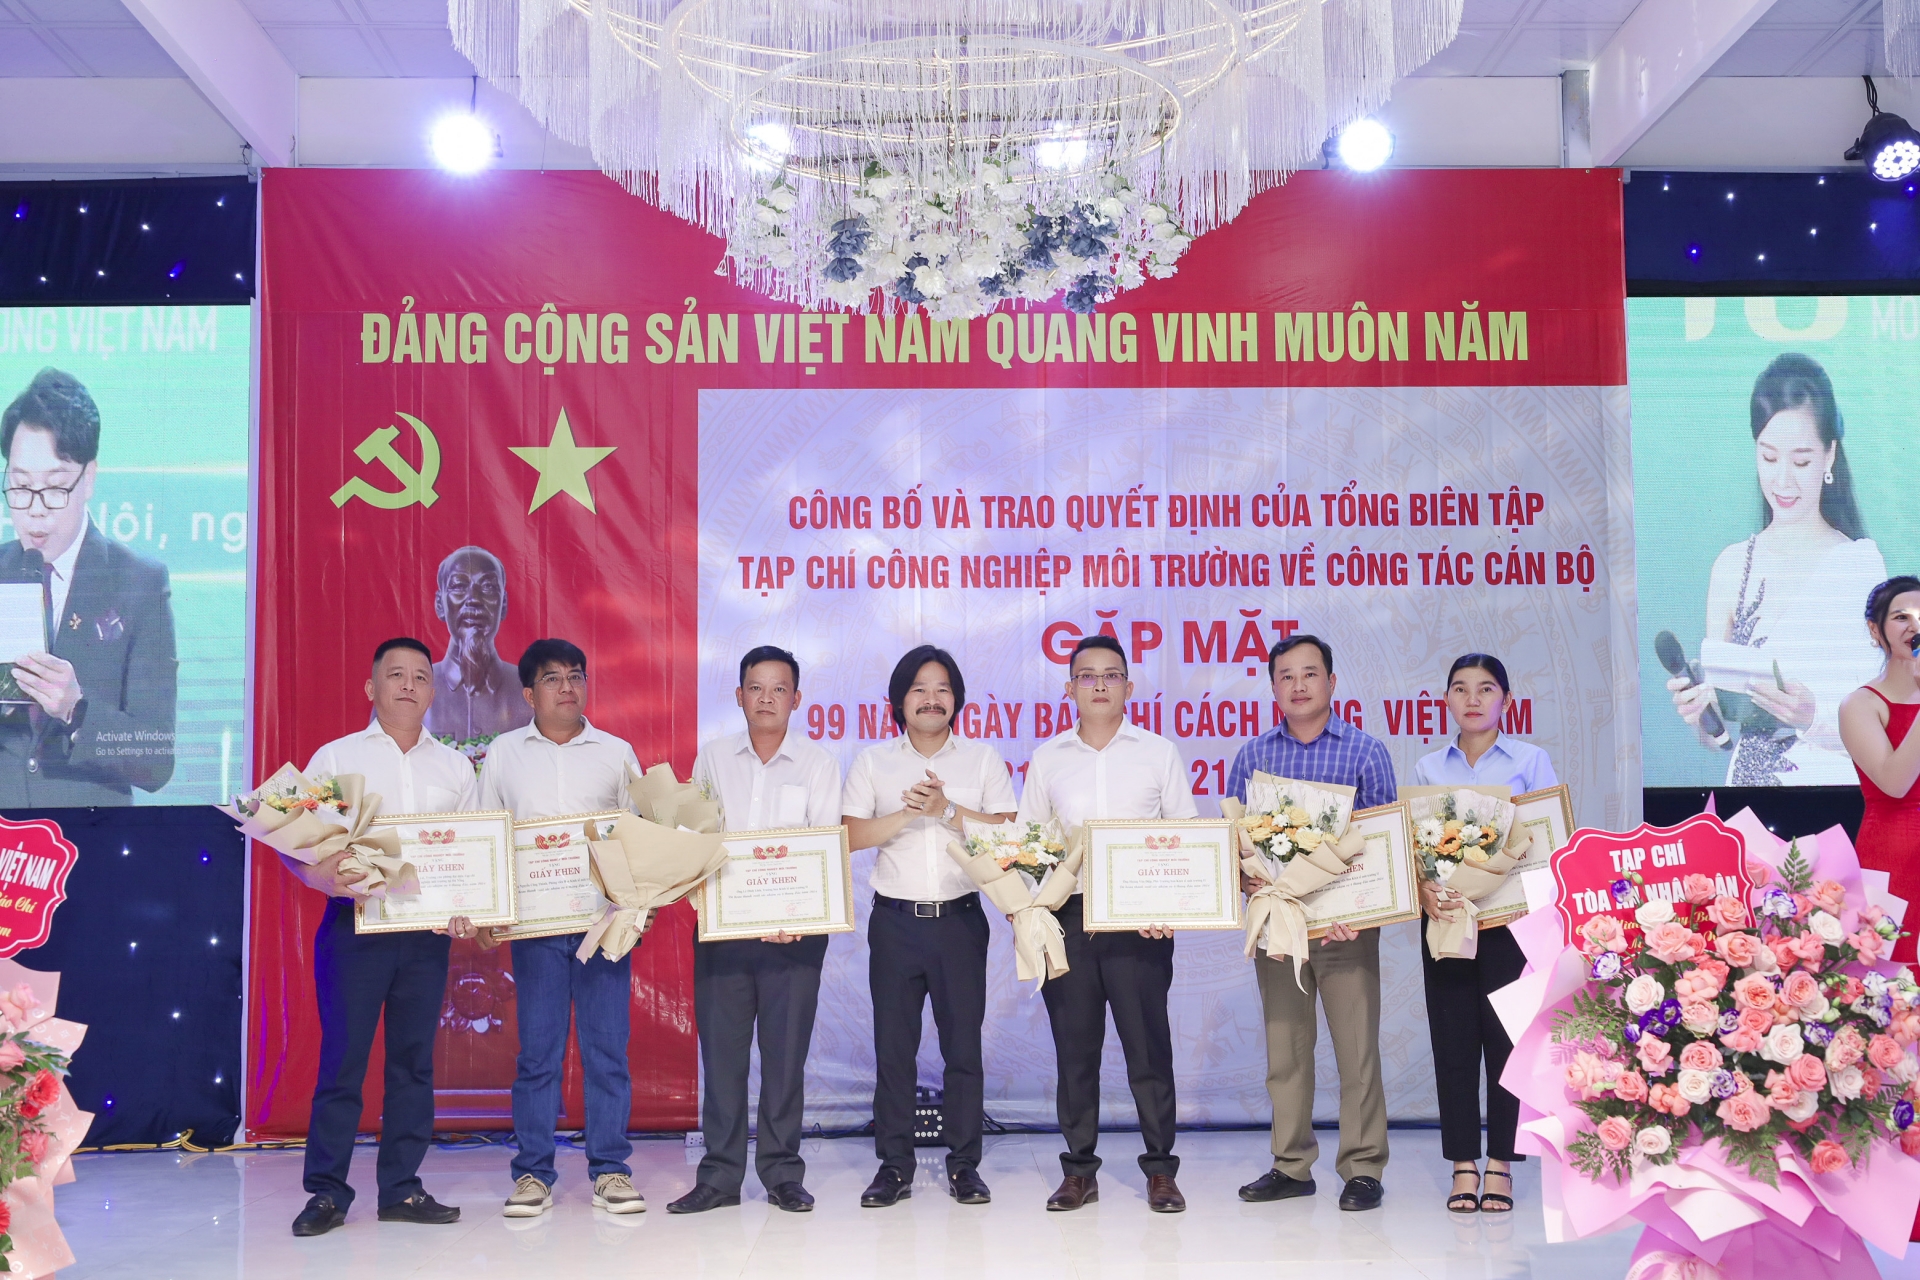 Công bố, trao quyết định của Tổng biên tập Tạp chí Công nghiệp môi trường về công tác cán bộ và Gặp mặt kỷ niệm 99 năm ngày Báo chí Cách mạng Việt Nam